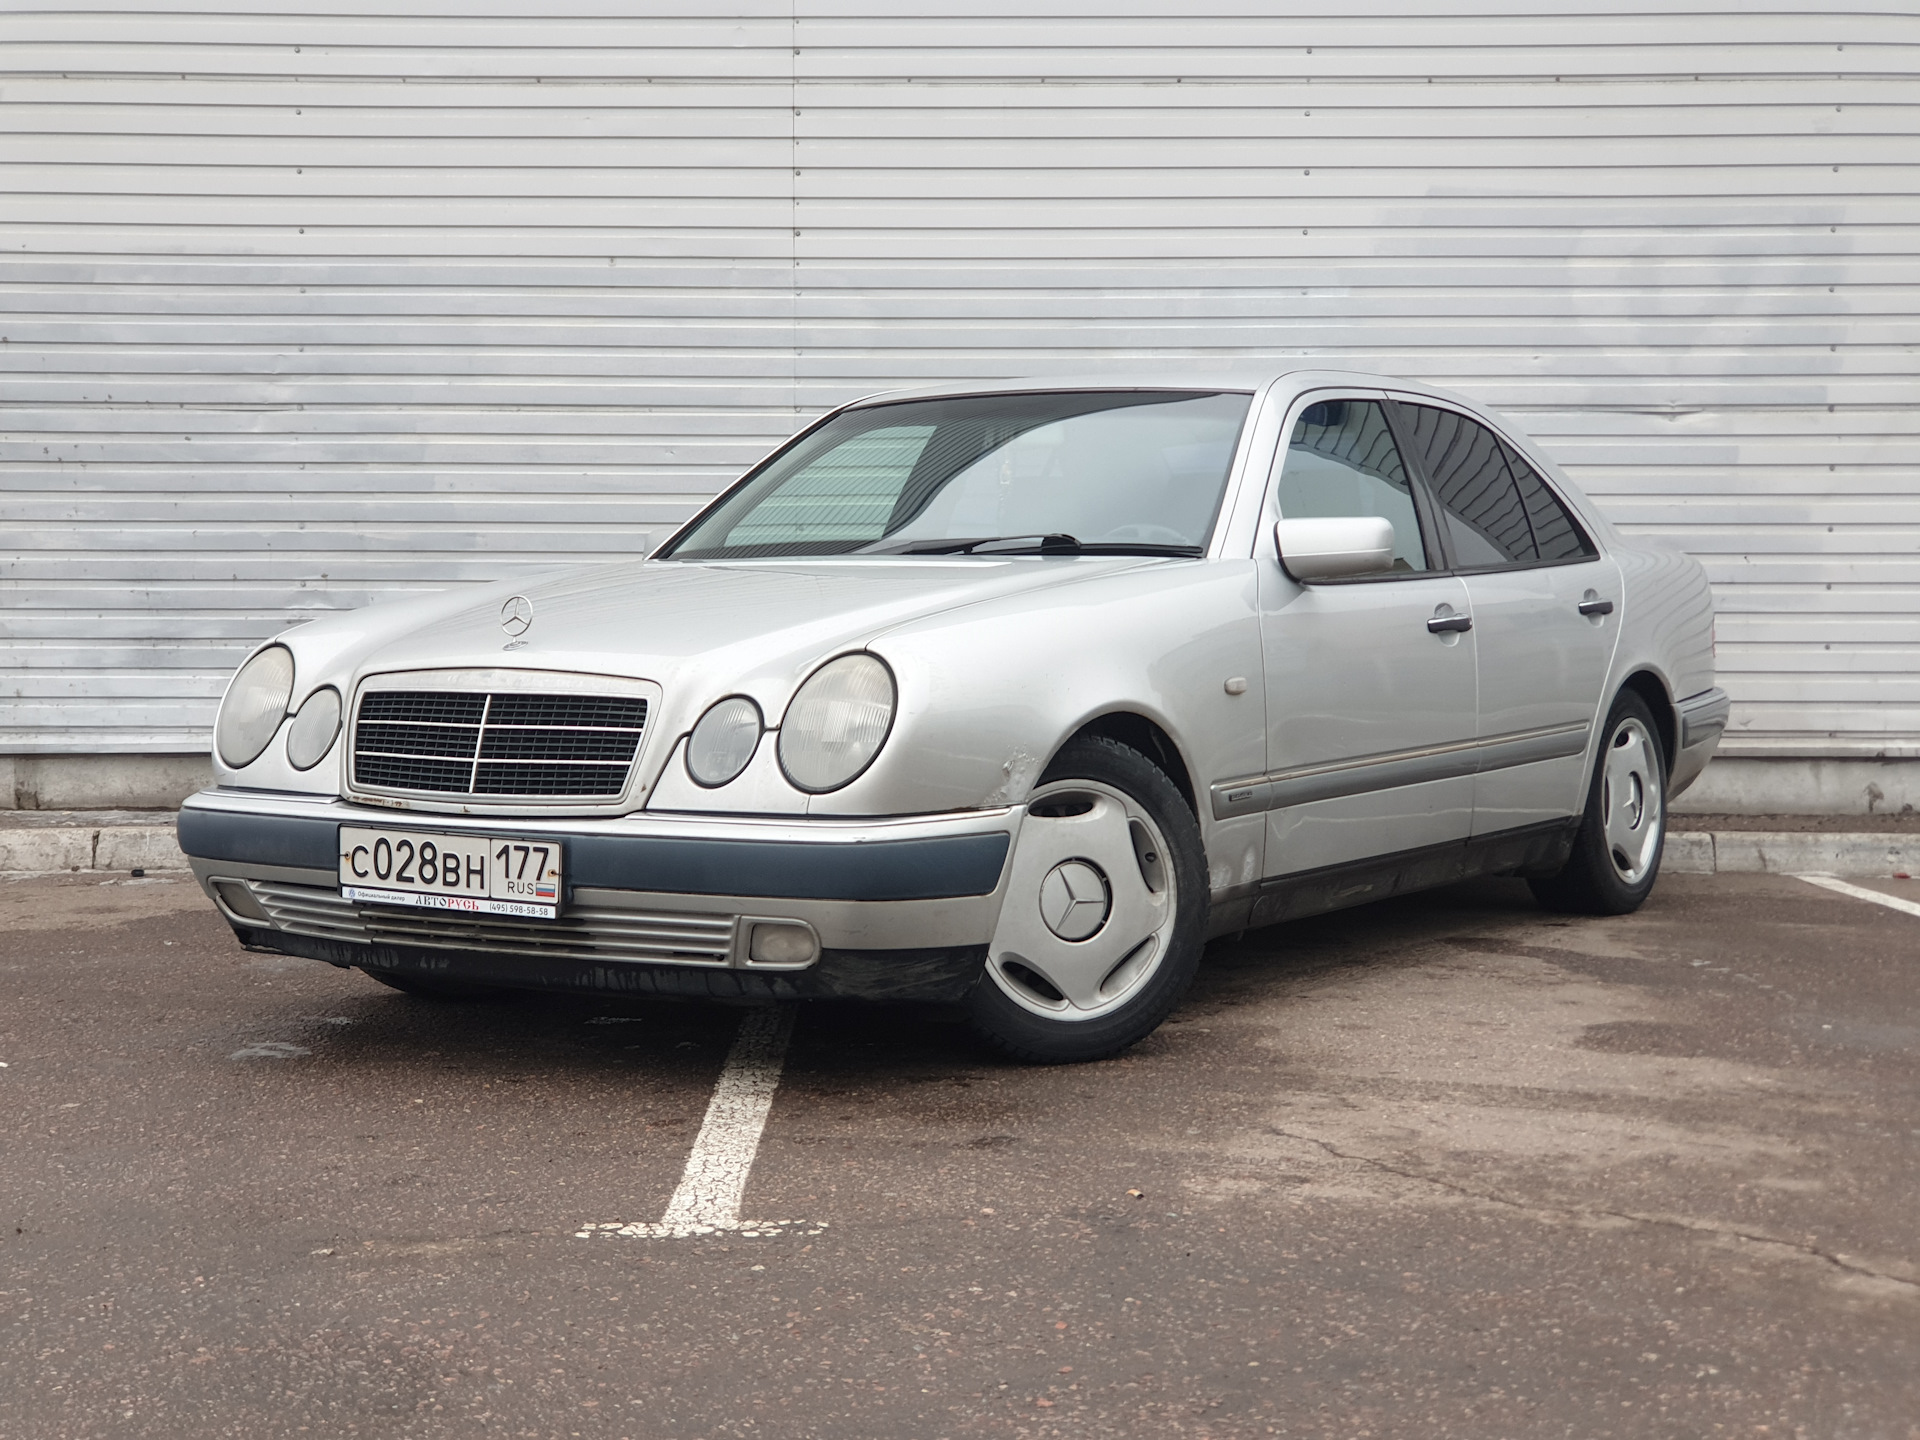 Купить мерседес 1998 года. W210 1998. Mercedes Benz e 420 1998 года. E-class 1998. E class 1998 белый.